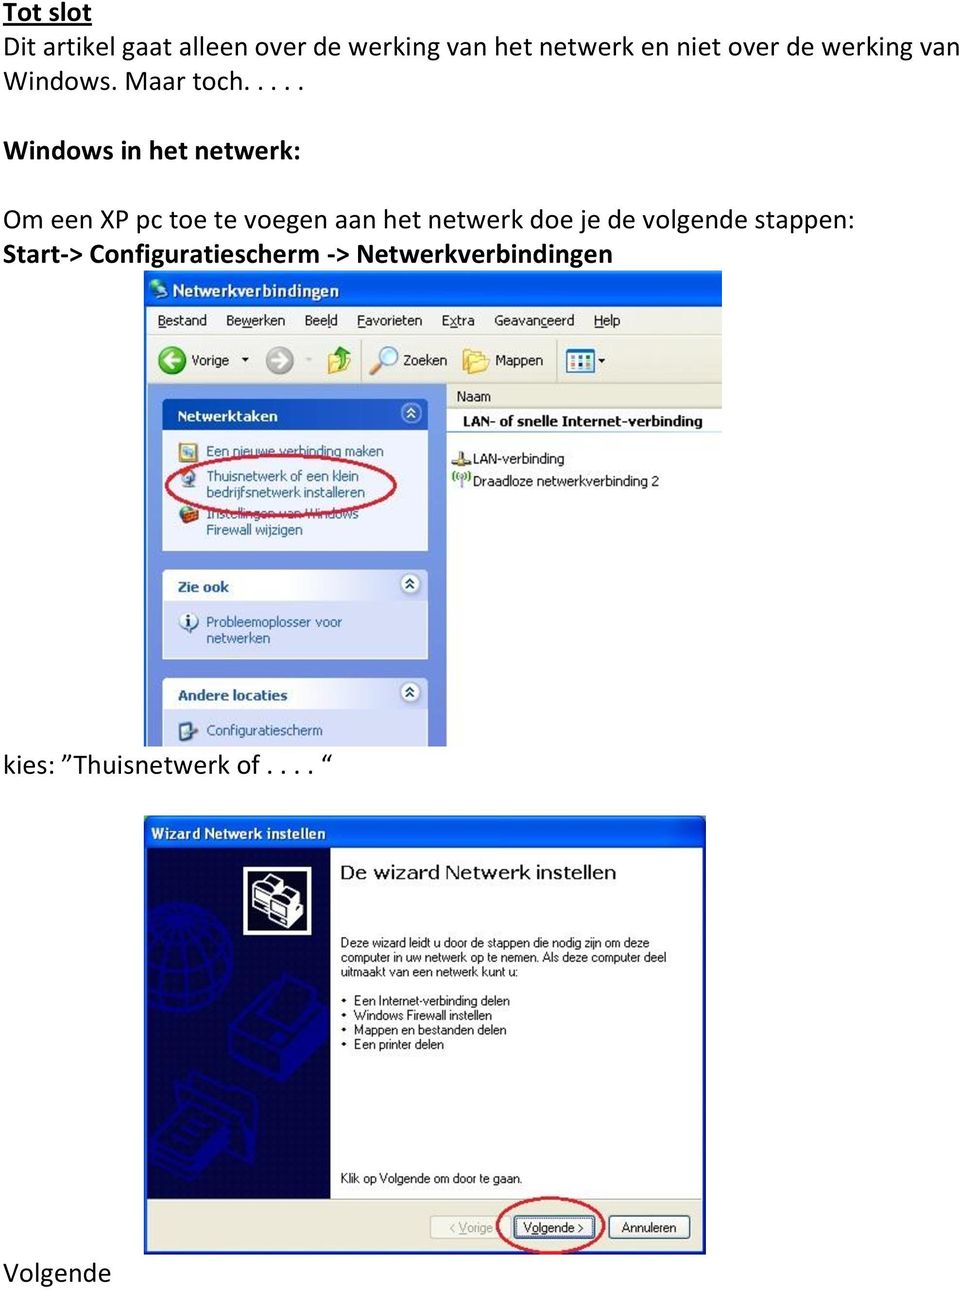 .... Windows in het netwerk: Om een XP pc toe te voegen aan het netwerk